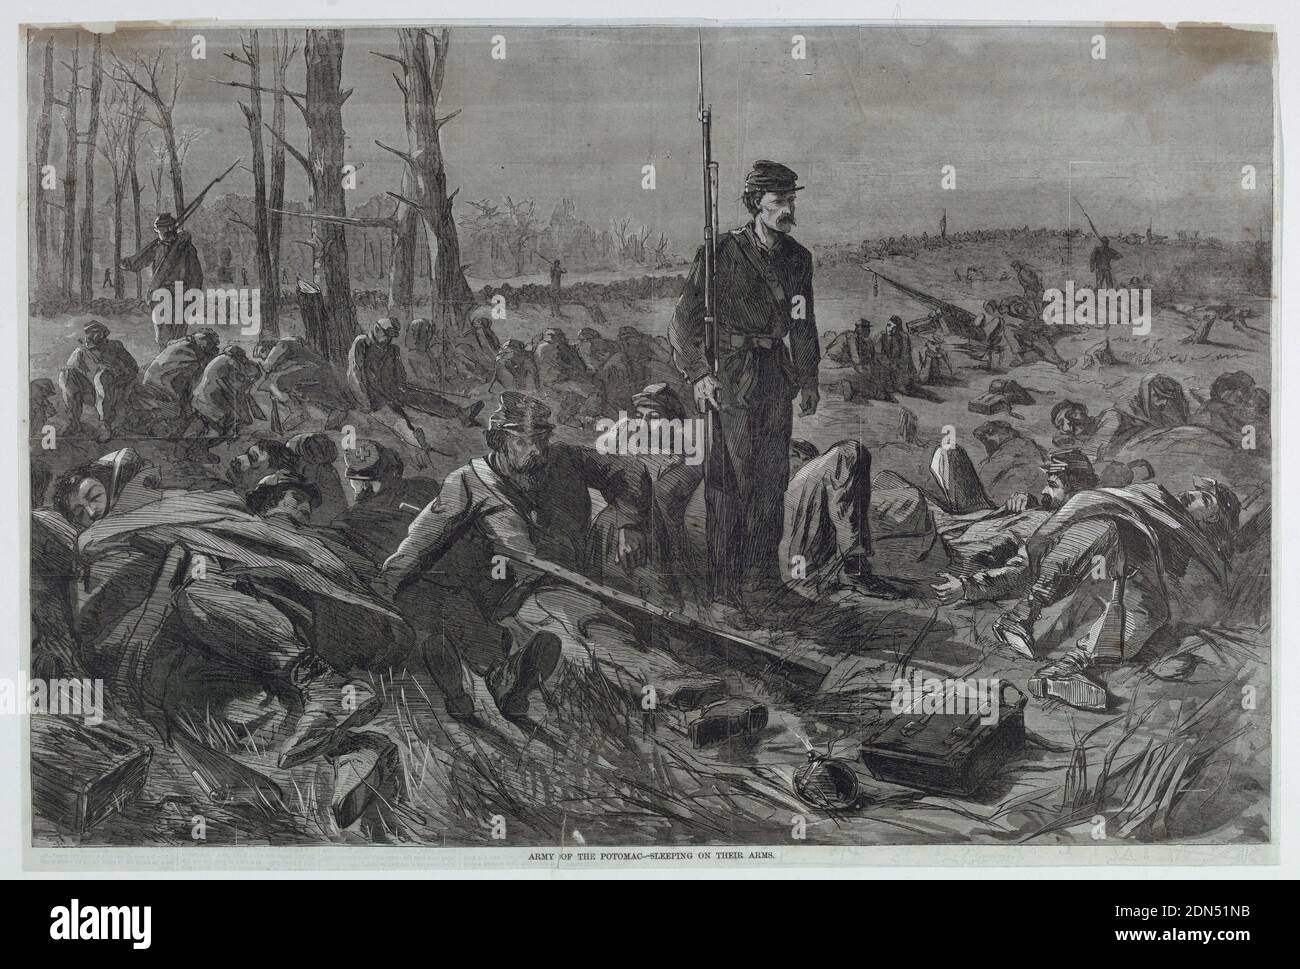 Armée du Potomac – dormir sur leurs bras, Harper's Weekly, gravure de bois à l'encre noire sur papier, l'armée de l'Union a endormi dans un champ avec des saisies postées., USA, 28 mai 1864, figures, Imprimer Banque D'Images